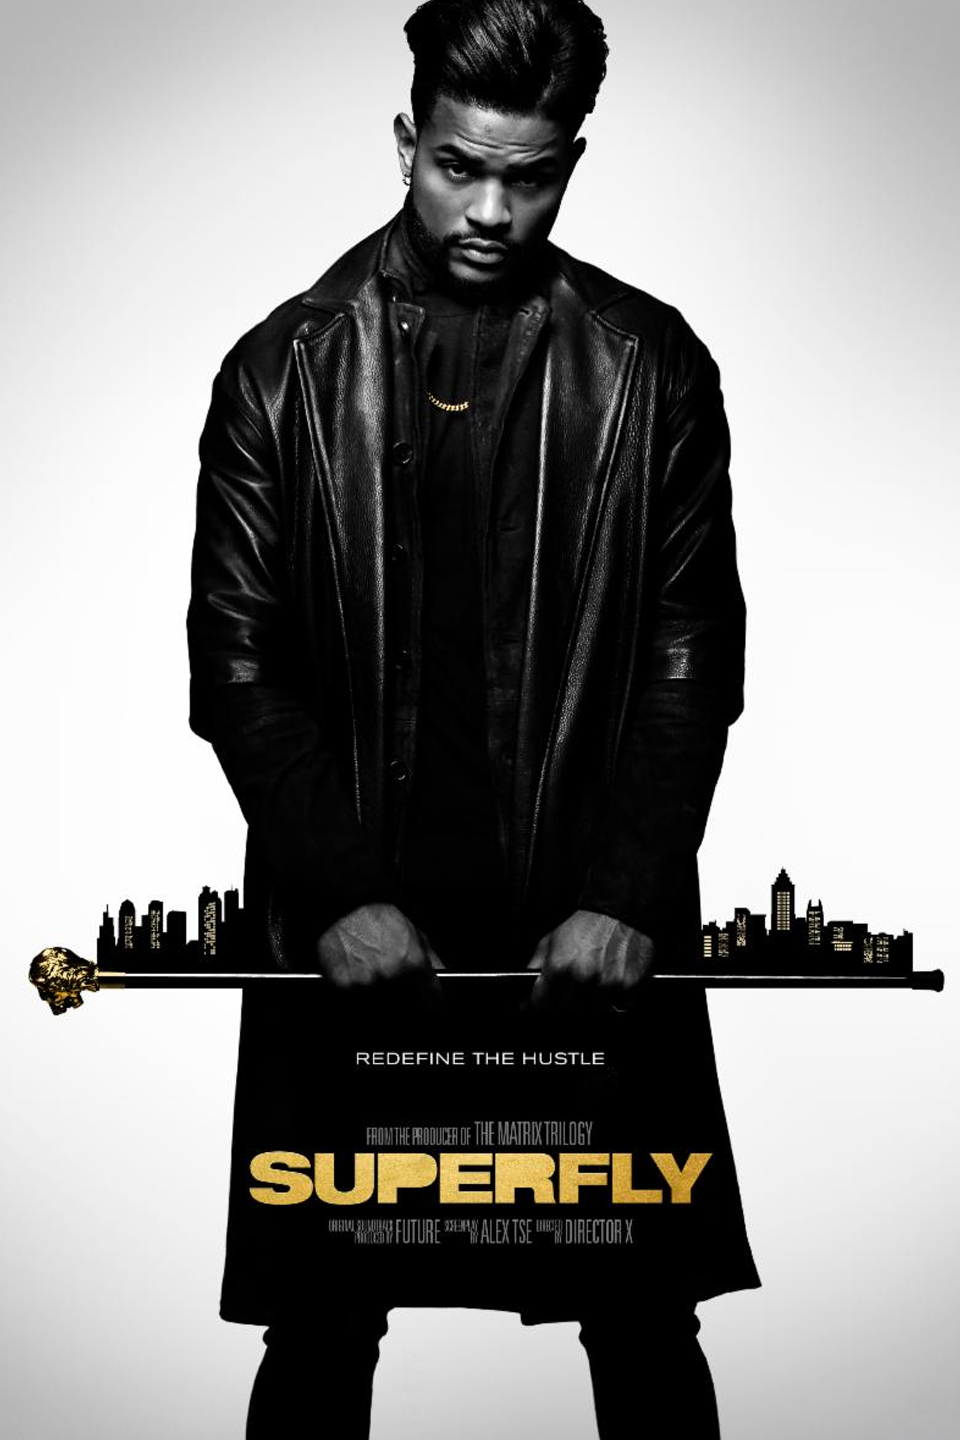 [ฝรั่ง] Superfly (2018) ซุปเปอร์ฟลาย [1080p] [พากย์อังกฤษ DTS] [Soundtrack บรรยายไทย] [เสียงอังกฤษ + ซับไทย]